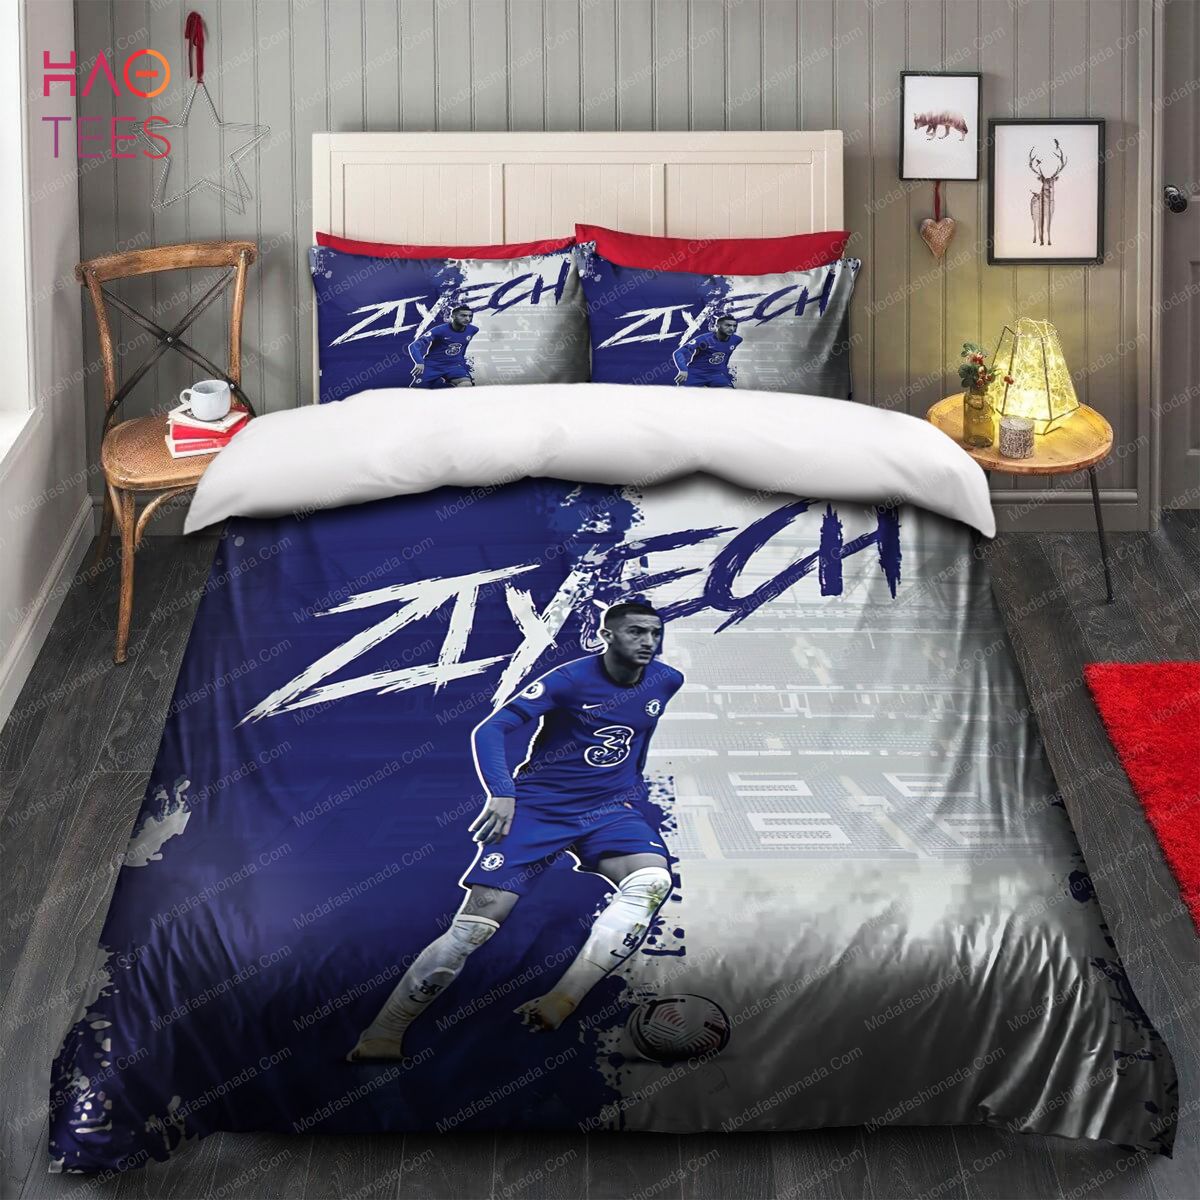 Hakim Ziyech Chelsea EPL Bedding Sets